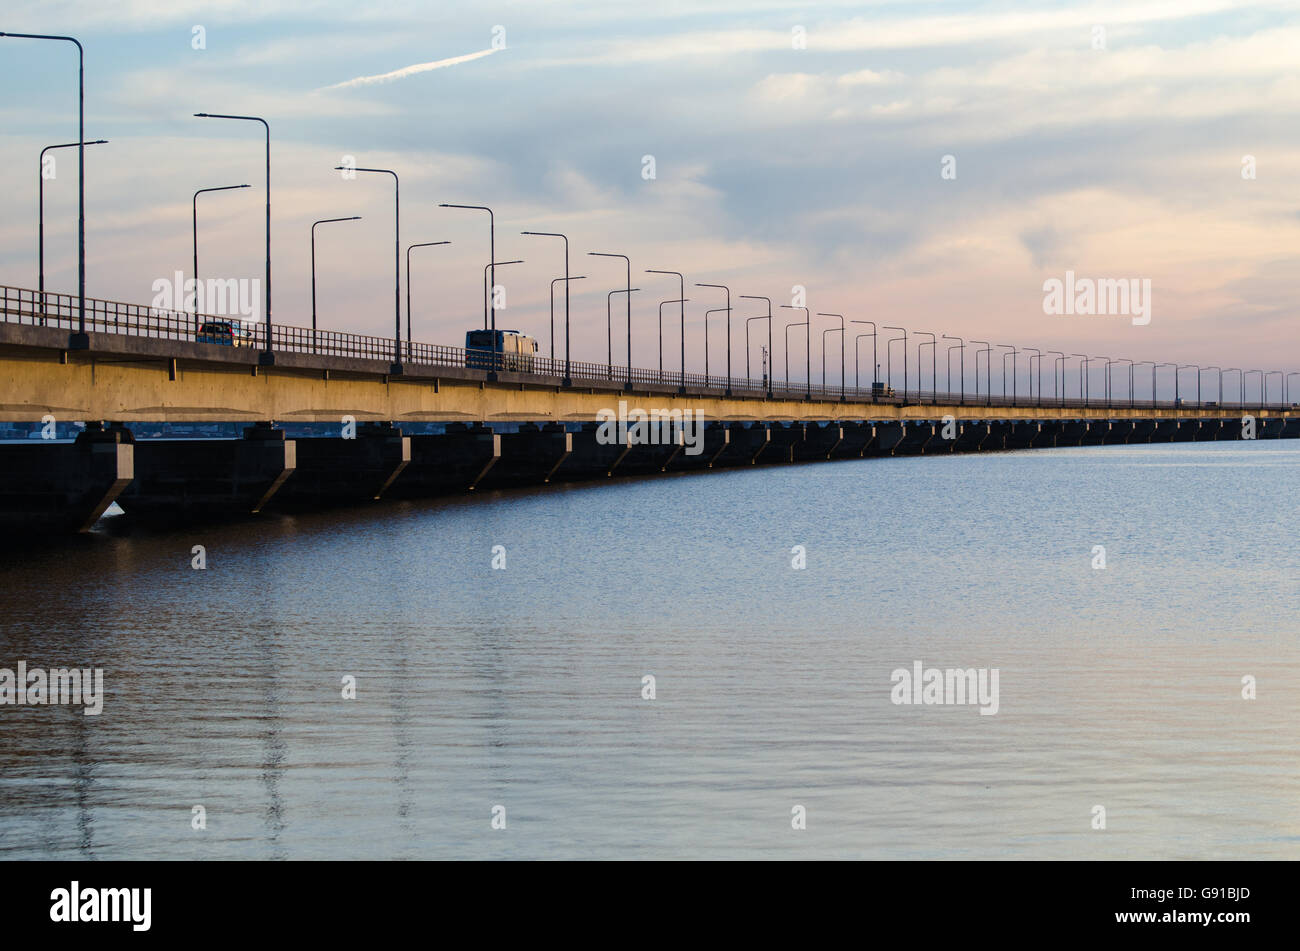 Detail der Öland-Brücke in Schweden, verbindet die Insel Öland mit dem Festland Schweden Stockfoto